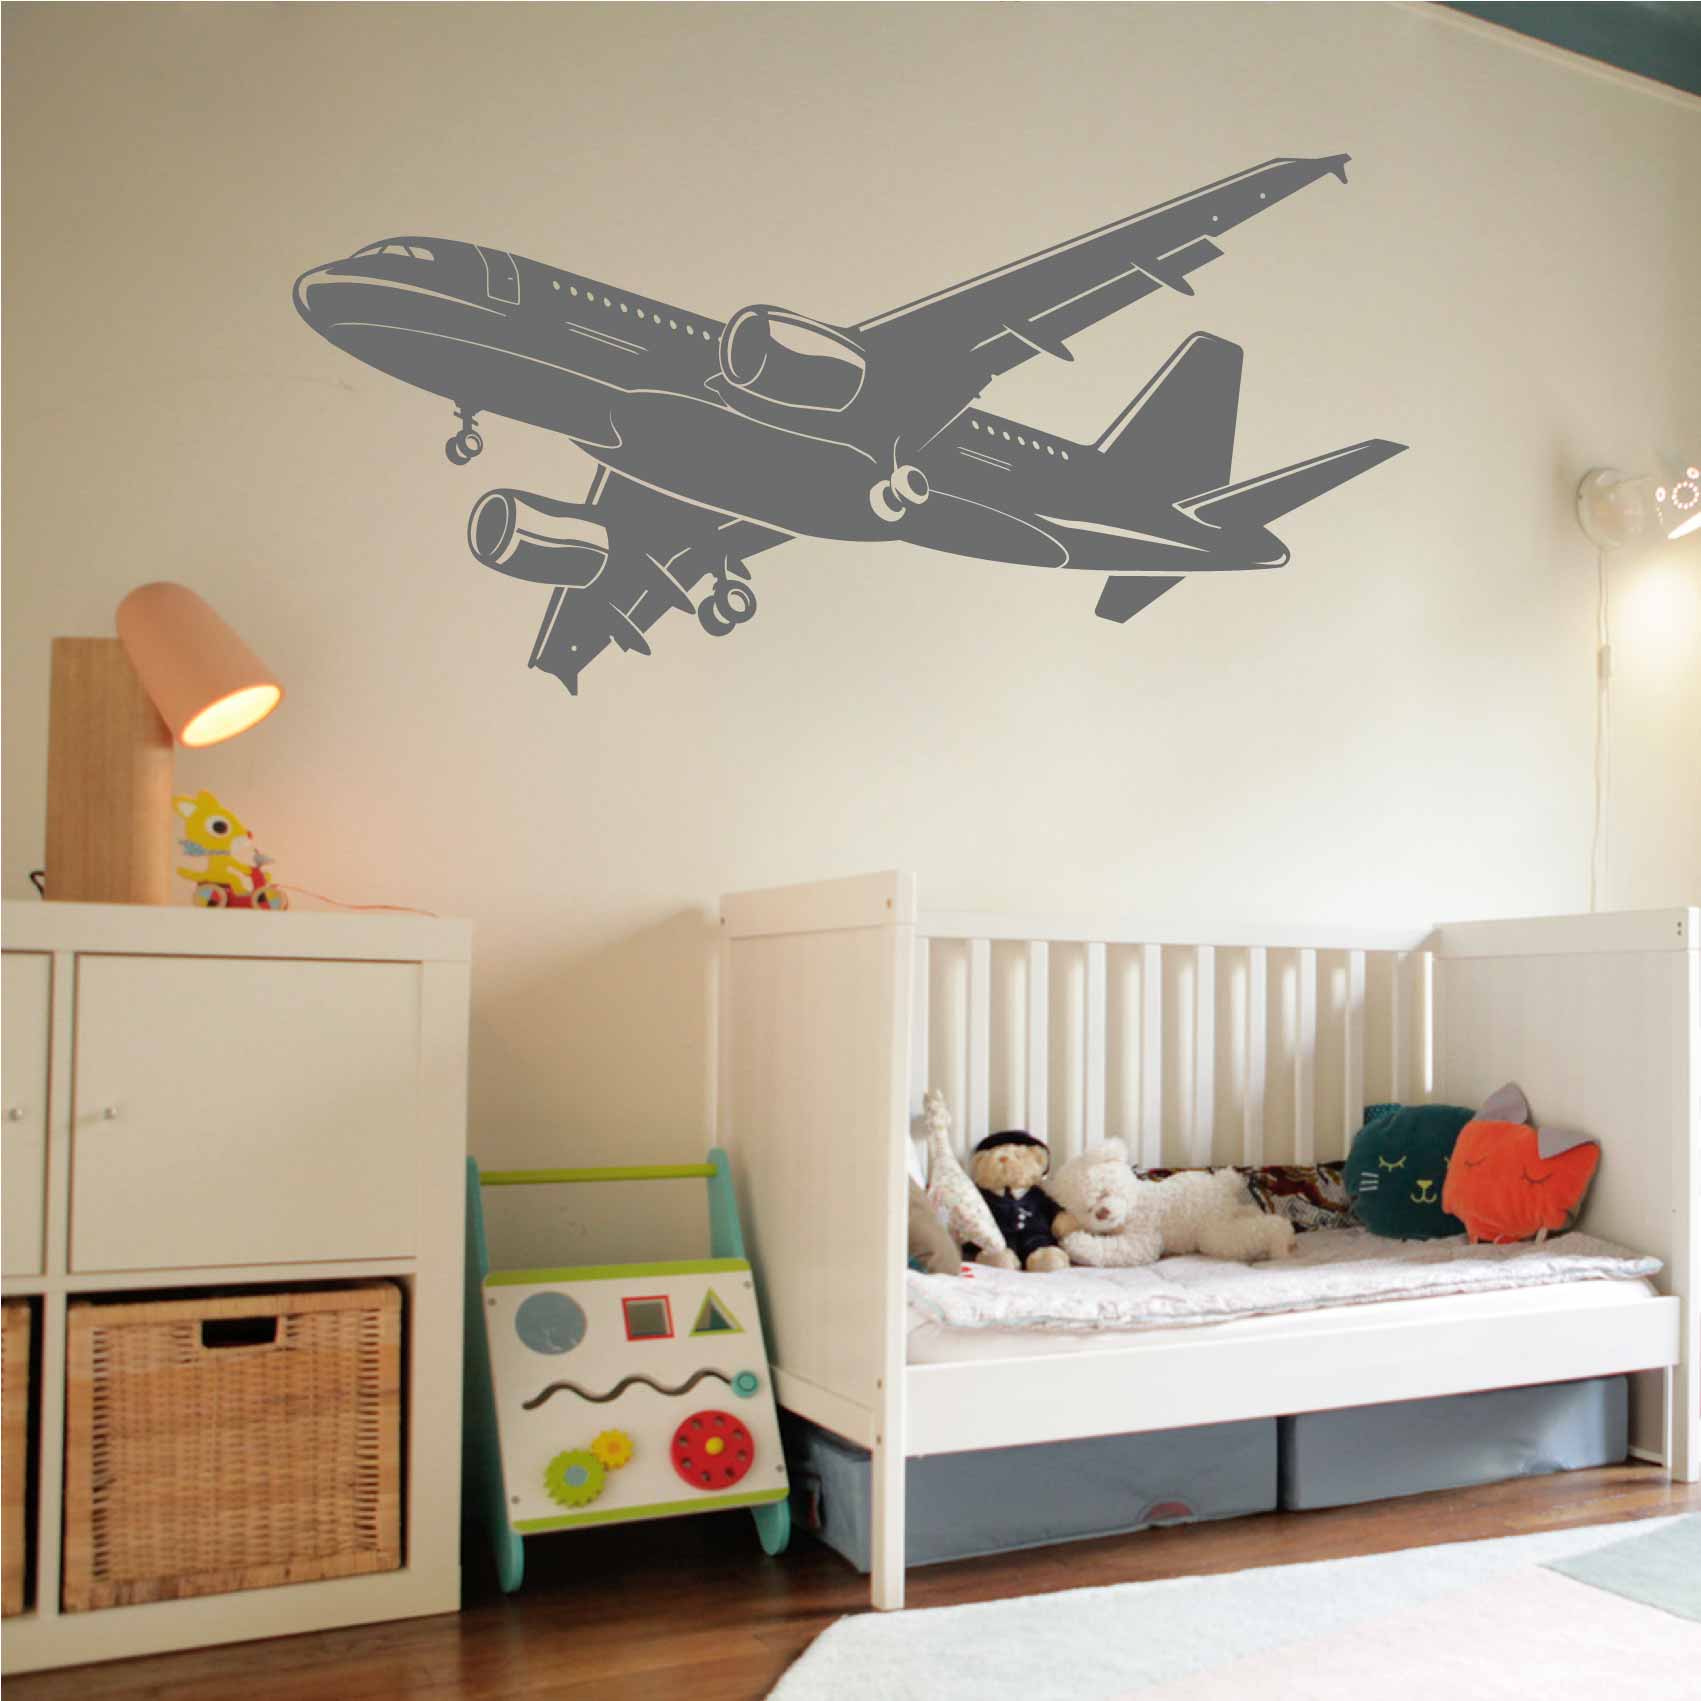 stickers-avion-de-ligne-ref11avion-stickers-muraux-avion-autocollant-deco-chambre-enfant-sticker-mural-avions